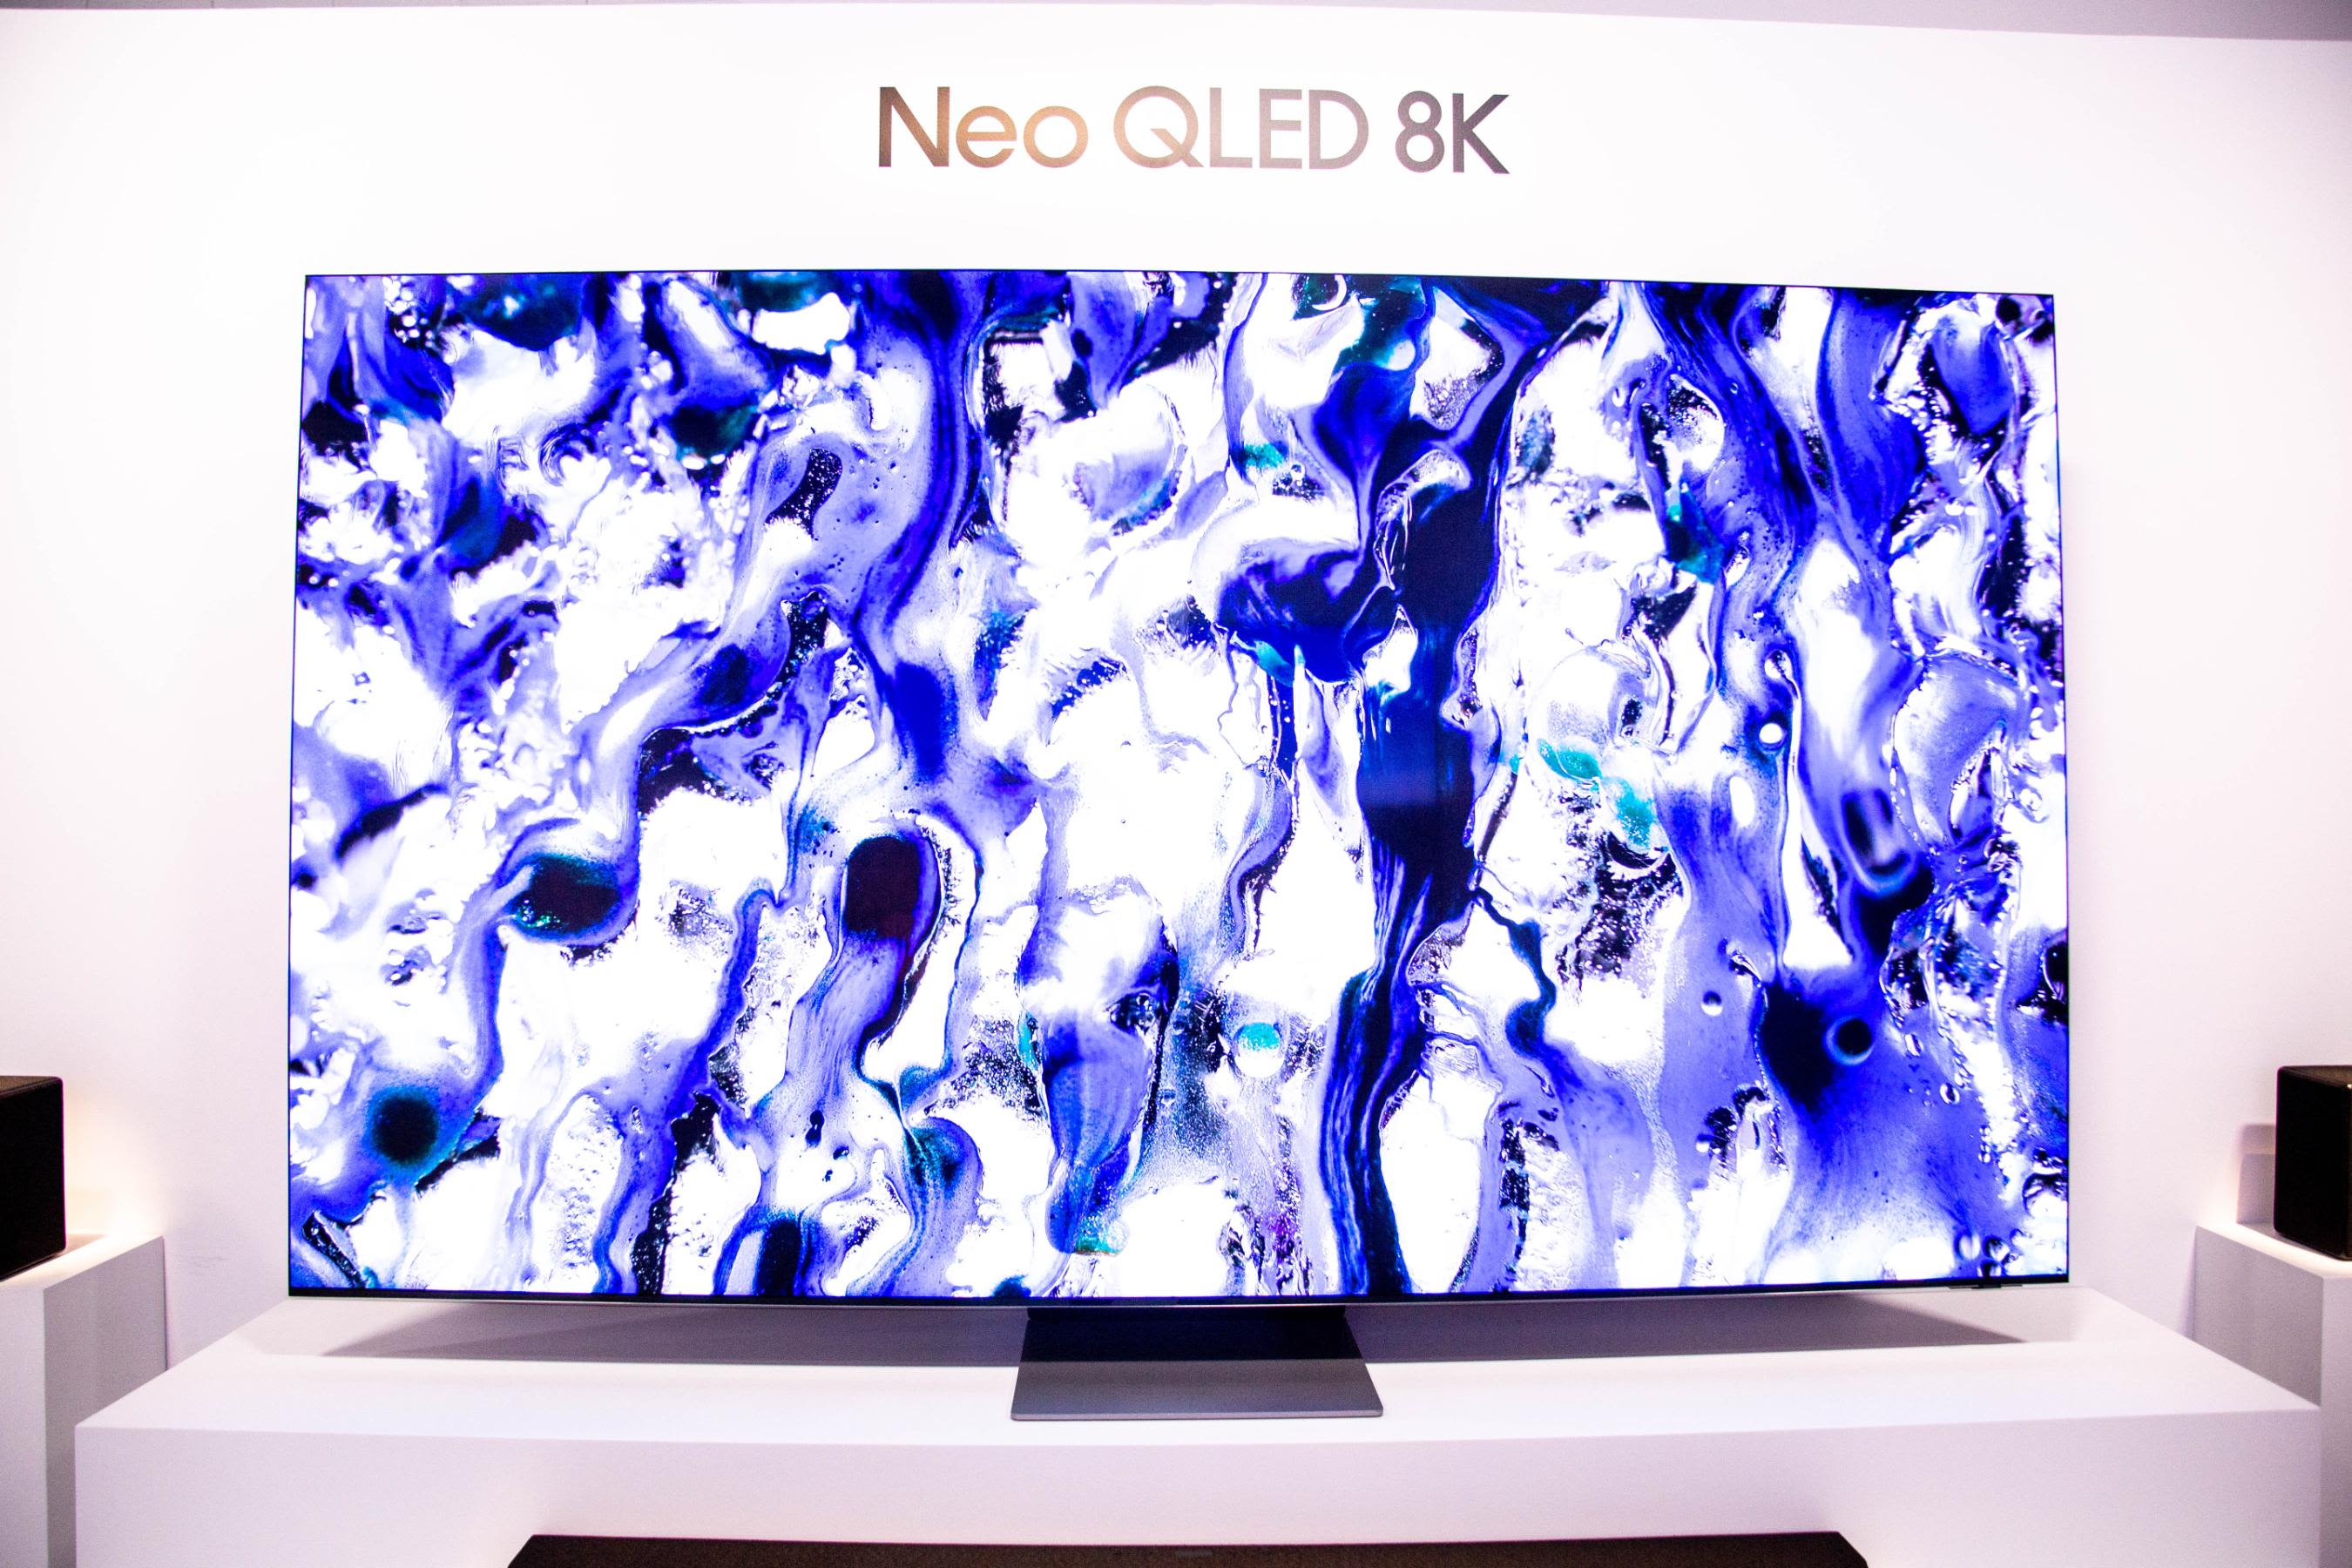 Телевизоры qled 8k. Телевизор Samsung Neo QLED 8k. Samsung QLED 2021. Samsung Neo QLED 8k 2022.